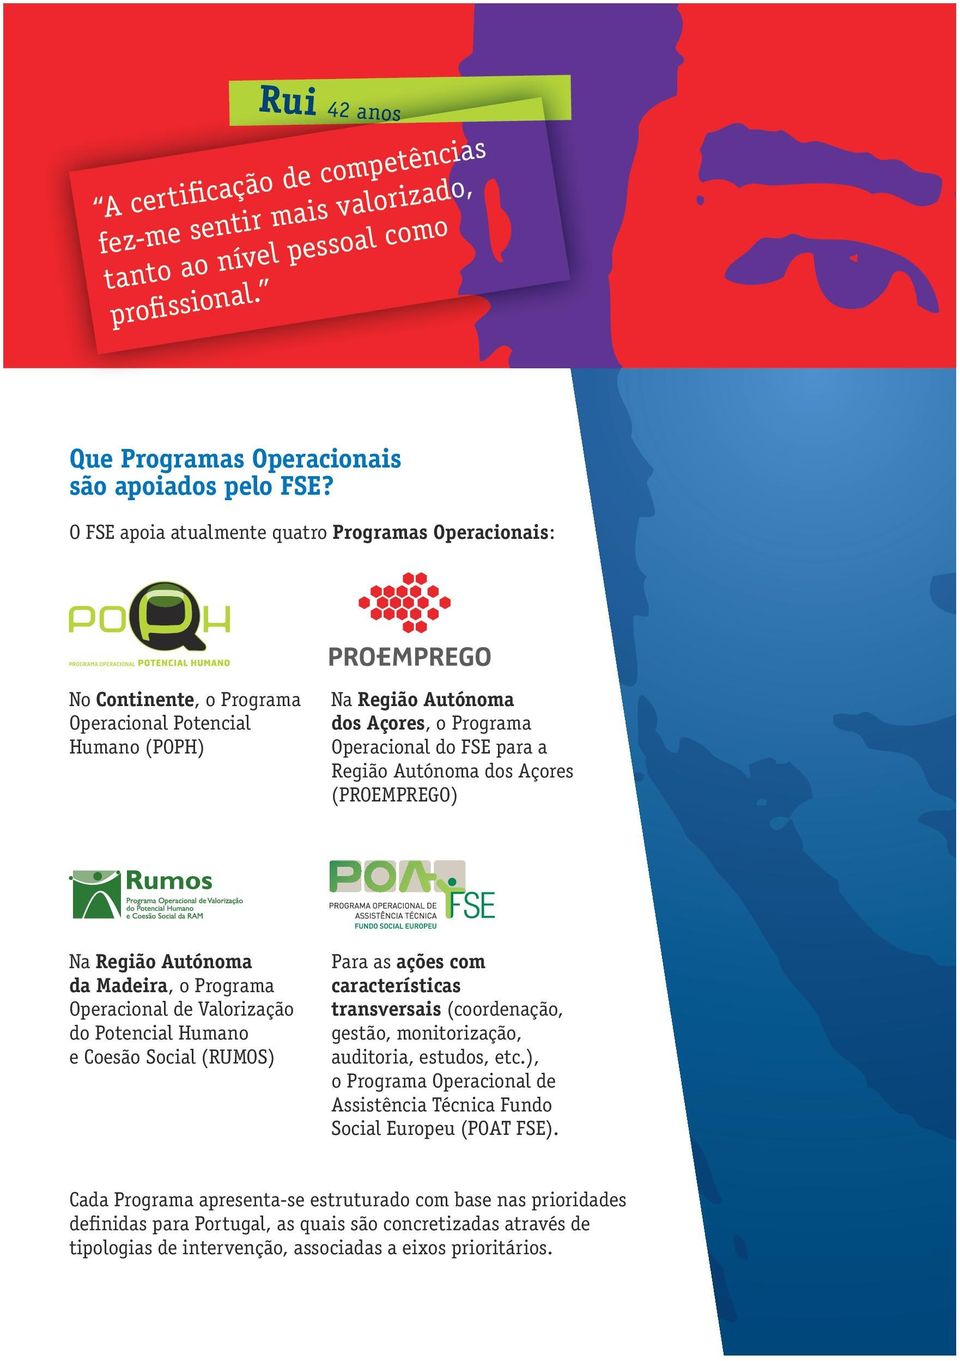 dos Açores (PROEMPREGO) Na Região Autónoma da Madeira, o Programa Operacional de Valorização do Potencial Humano e Coesão Social (RUMOS) Para as ações com características transversais (coordenação,